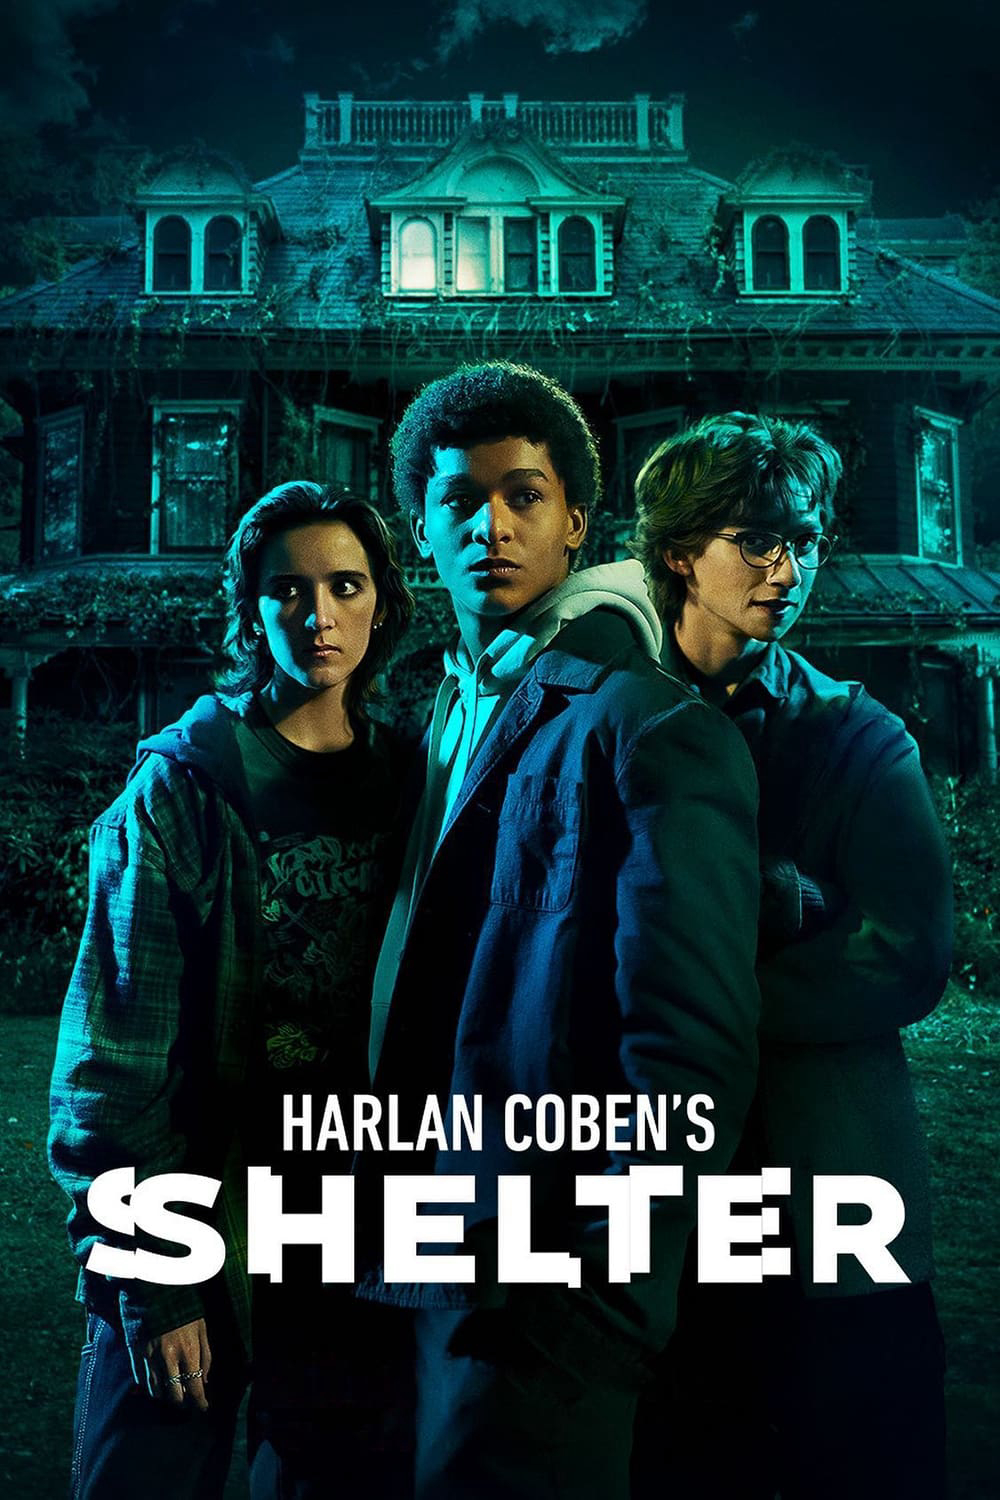 Poster Phim Harlan Coben's Shelter (Harlan Coben's Shelter)